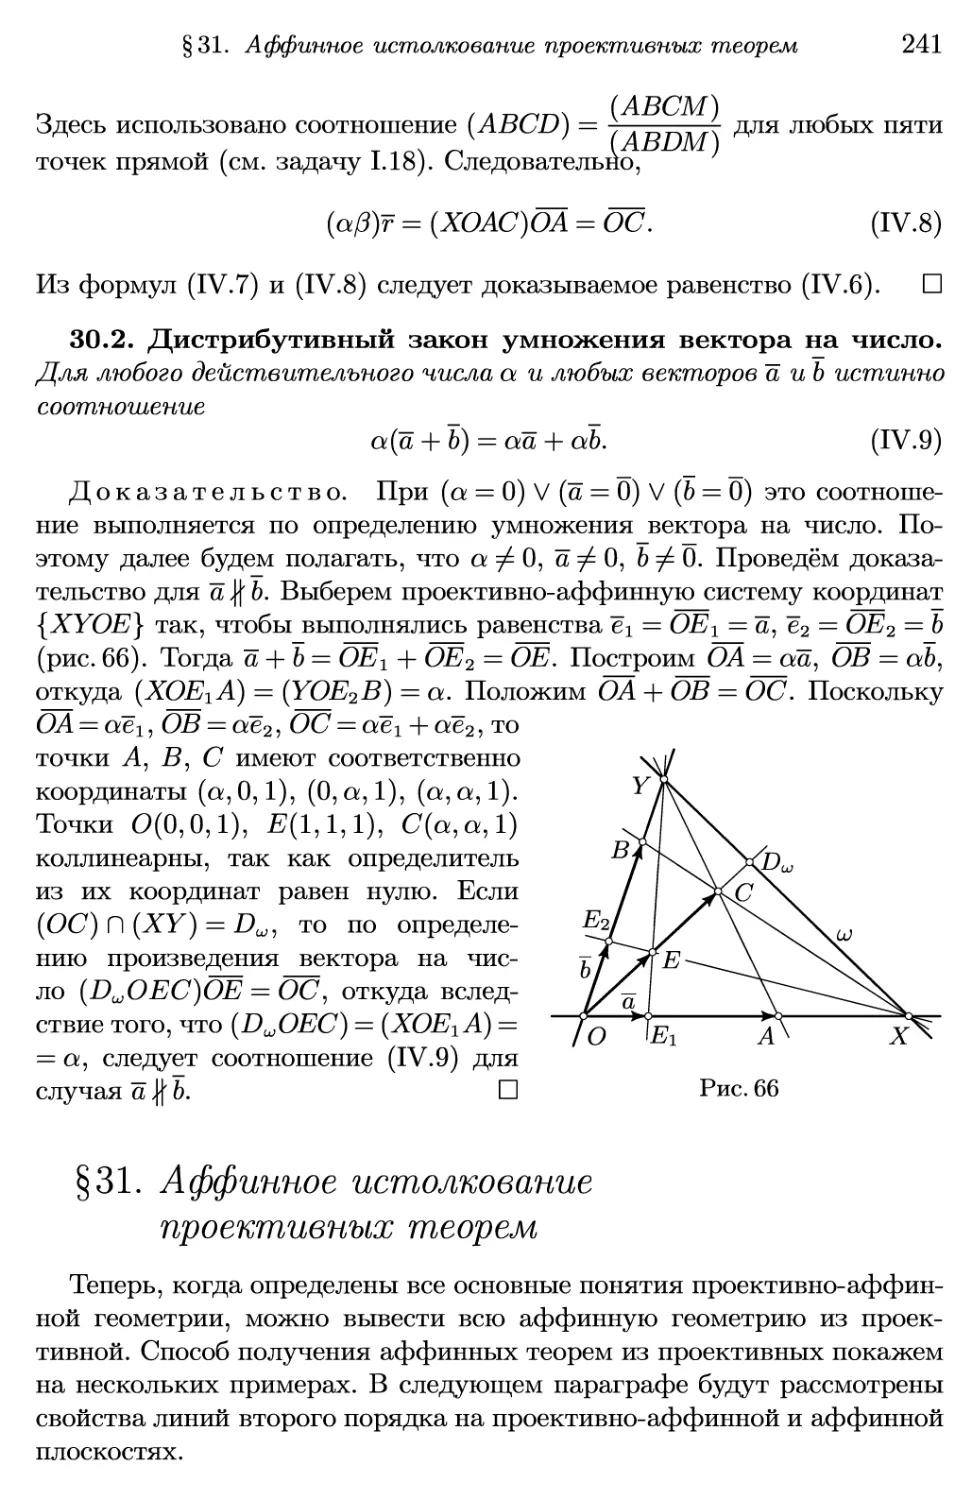 §31. Аффинное истолкование проективных теорем